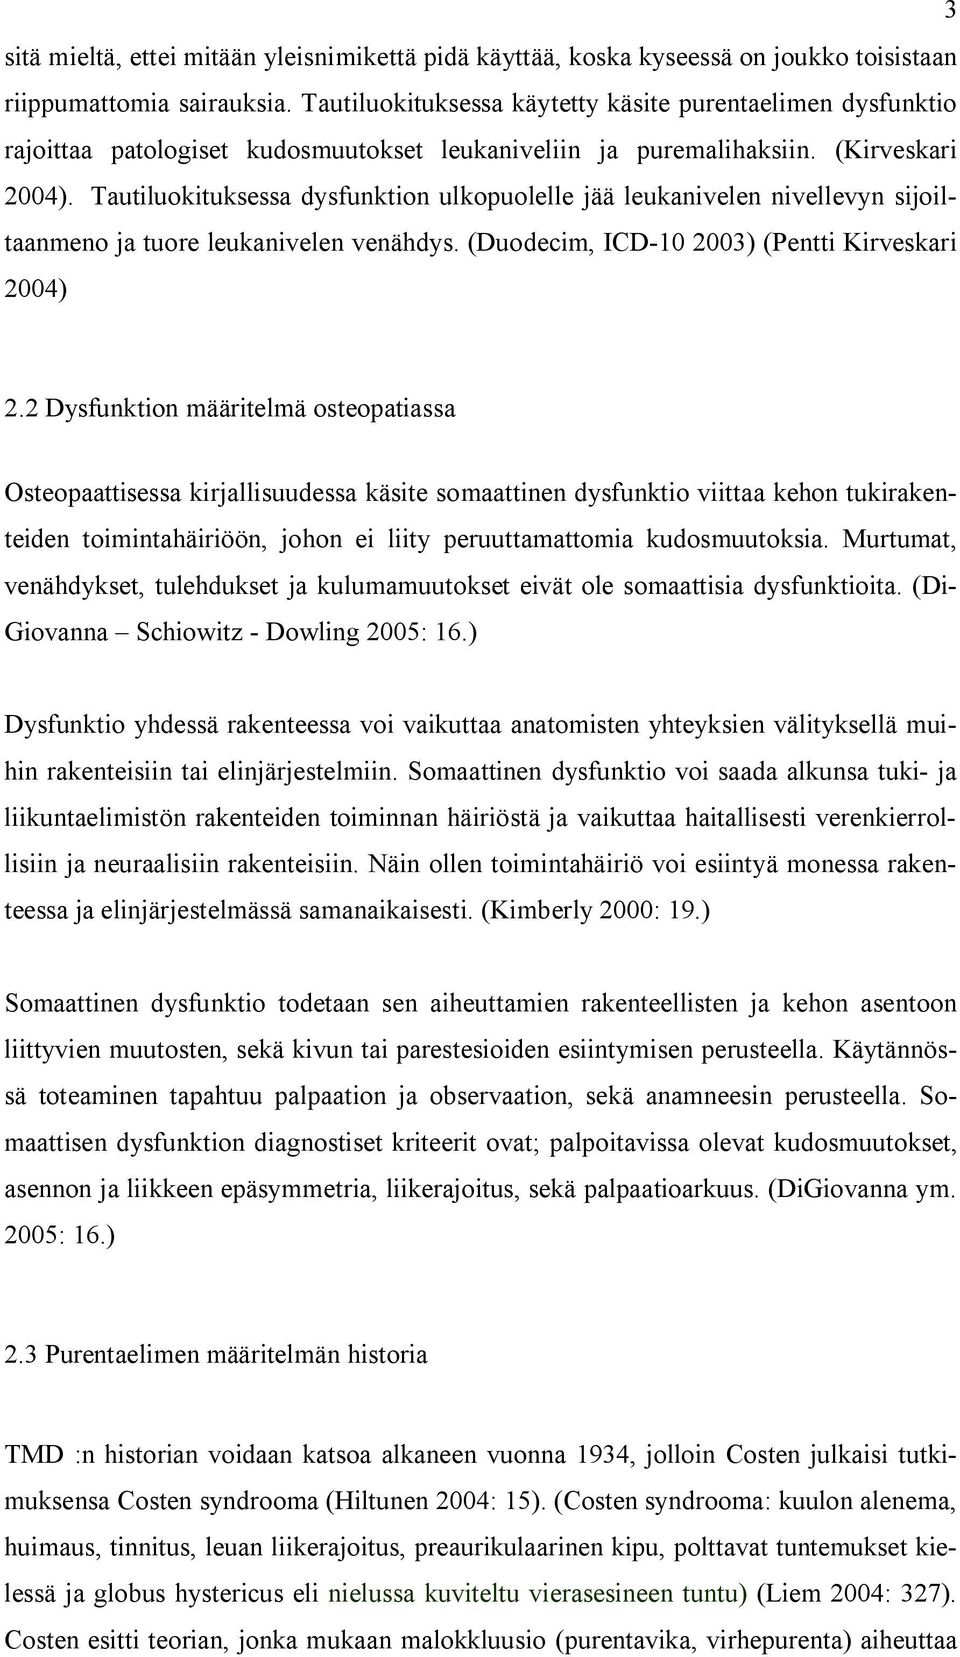 Tautiluokituksessa dysfunktion ulkopuolelle jää leukanivelen nivellevyn sijoiltaanmeno ja tuore leukanivelen venähdys. (Duodecim, ICD-10 2003) (Pentti Kirveskari 2004) 2.